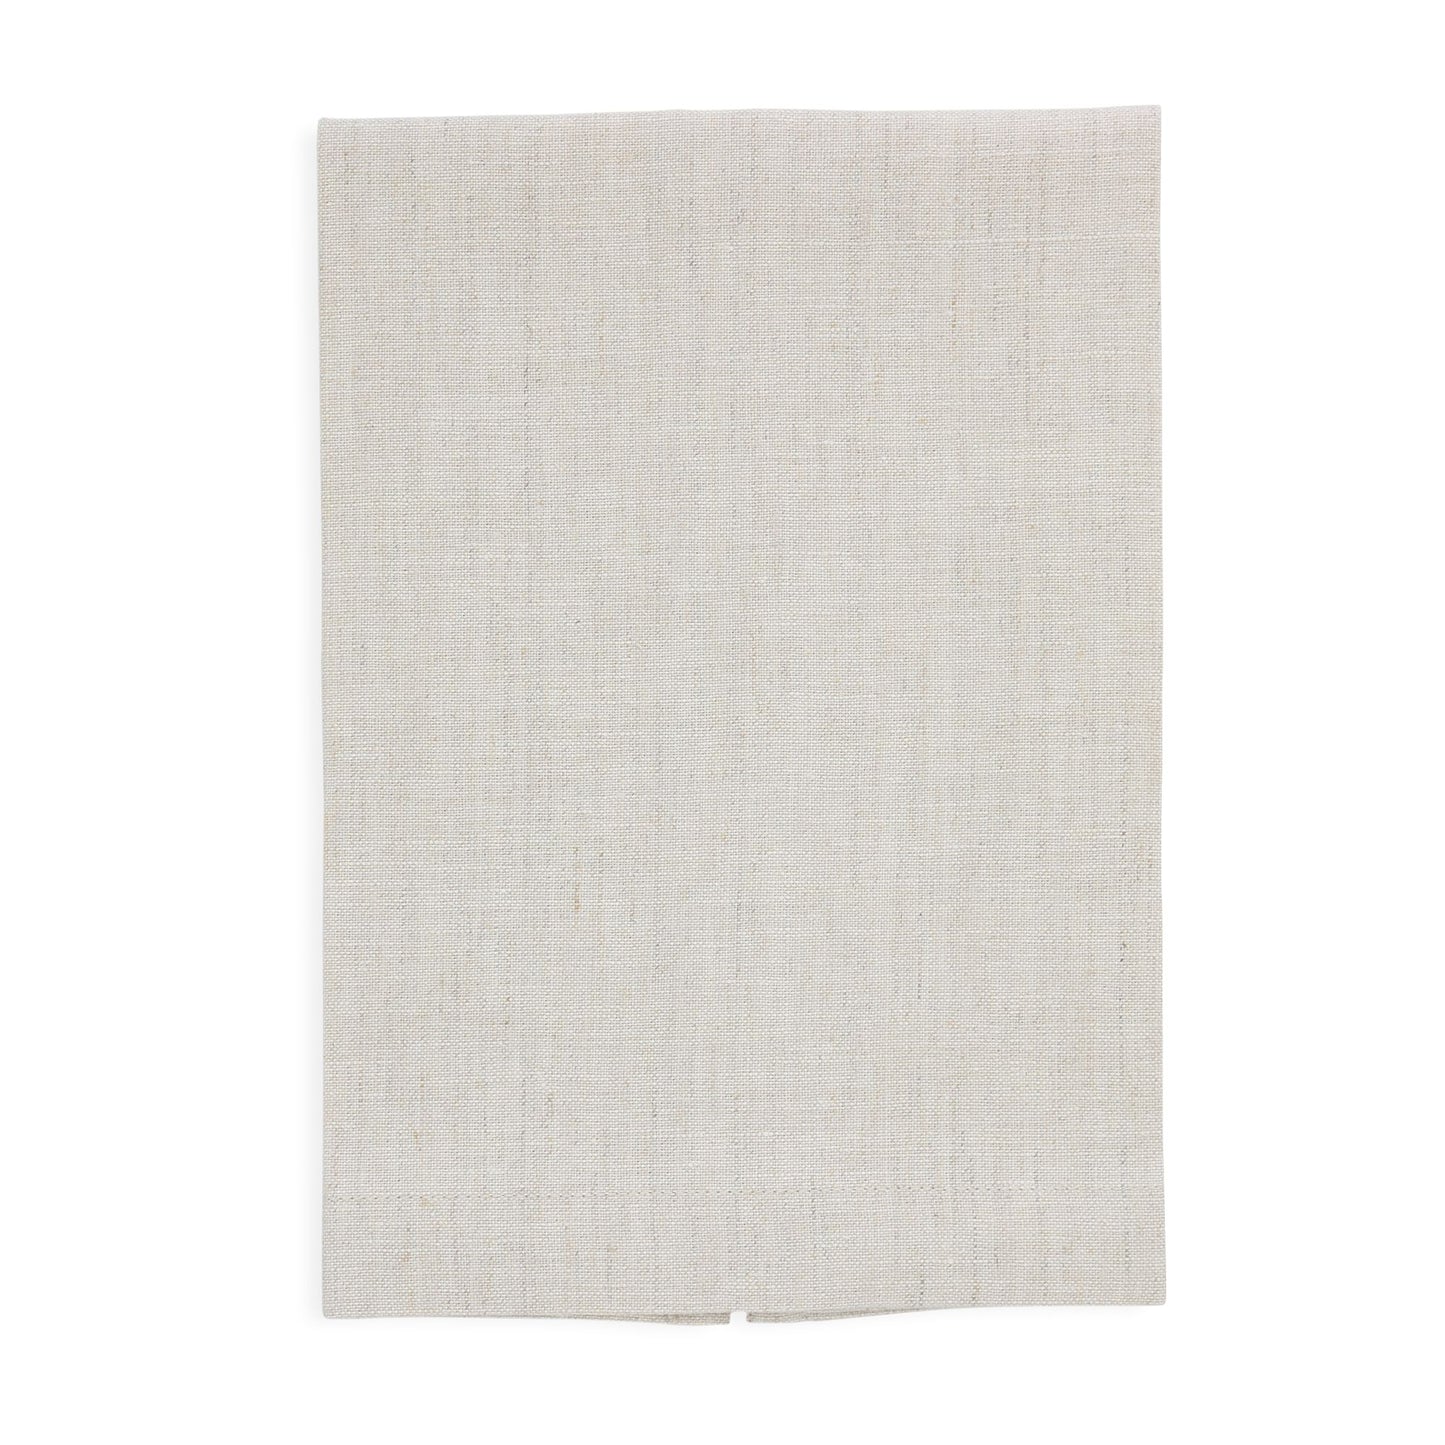 Asciugamani per gli ospiti in lino chiaro di farina d'avena (ciascuno)